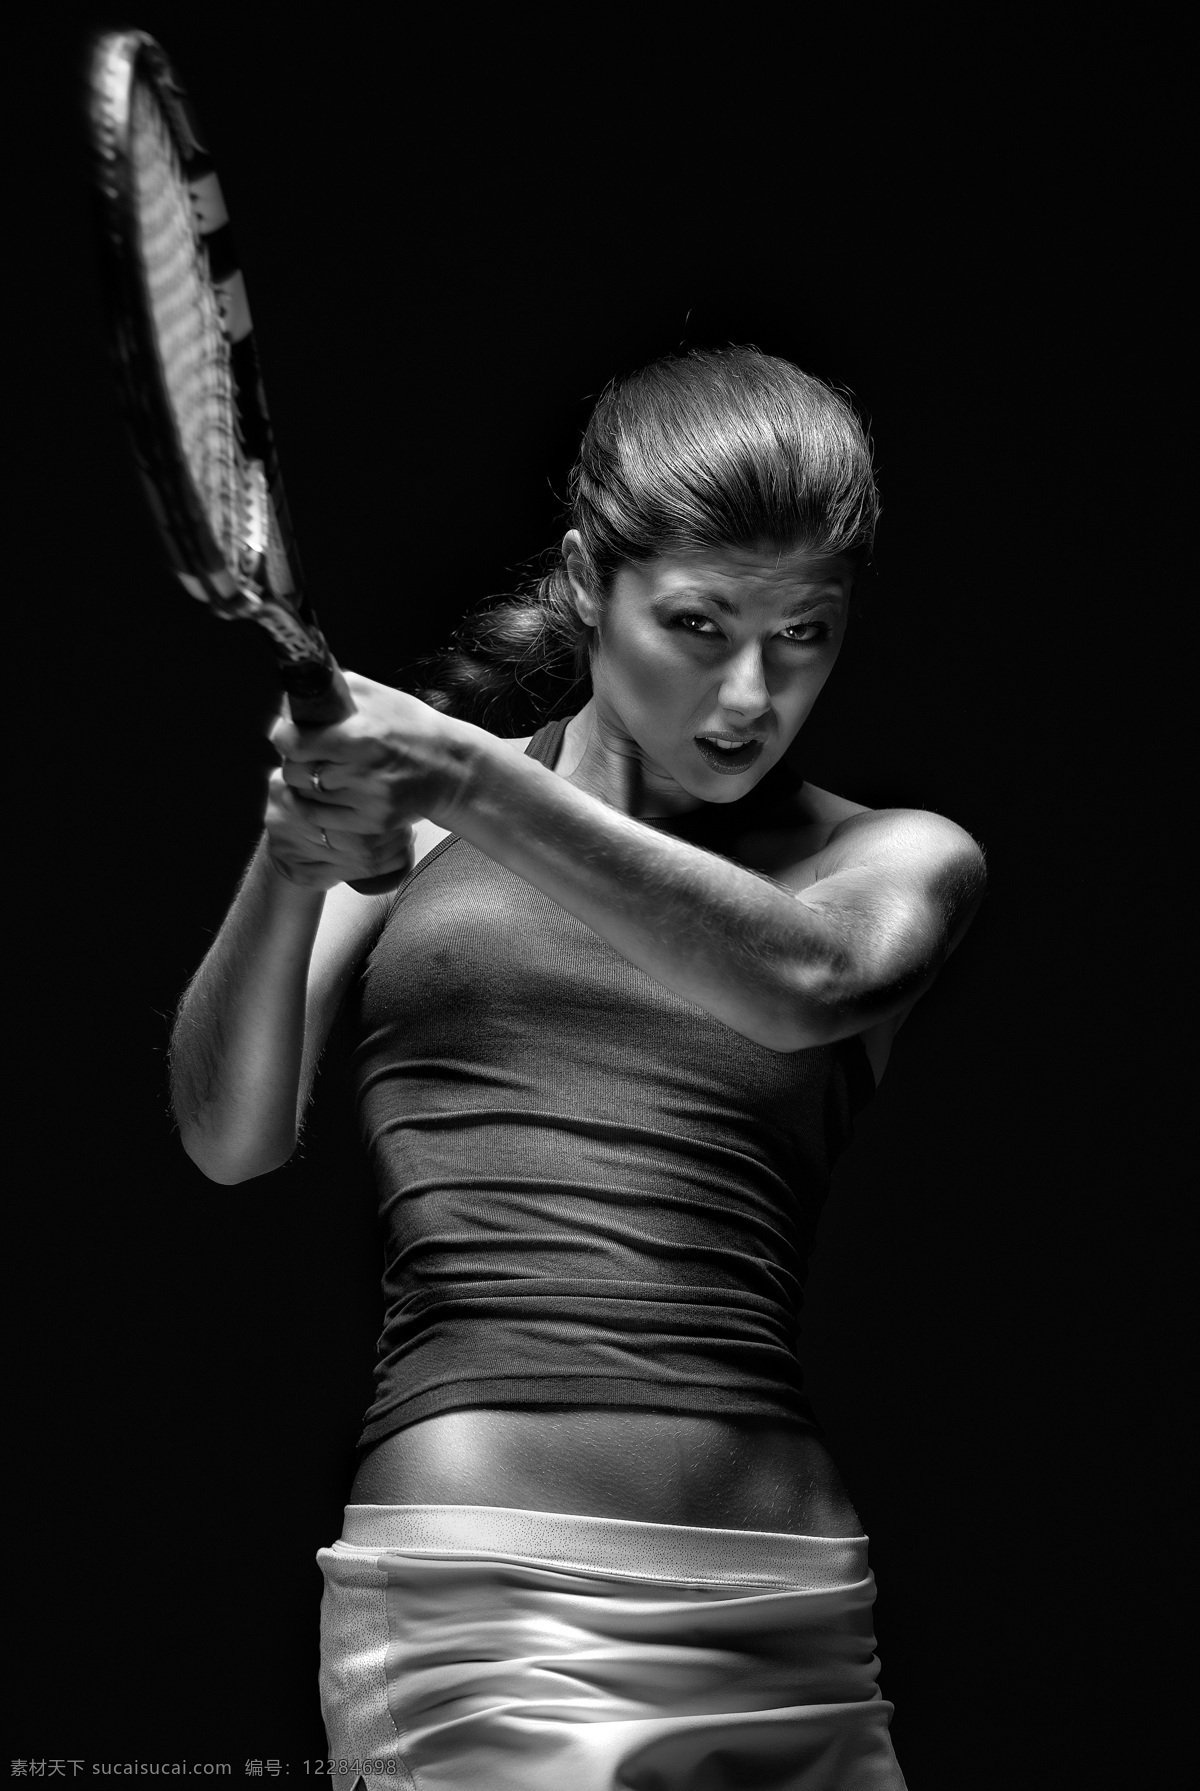 网球 女人 人物 女性 健身 健康生活 运动 打网球 用力 美女图片 人物图片